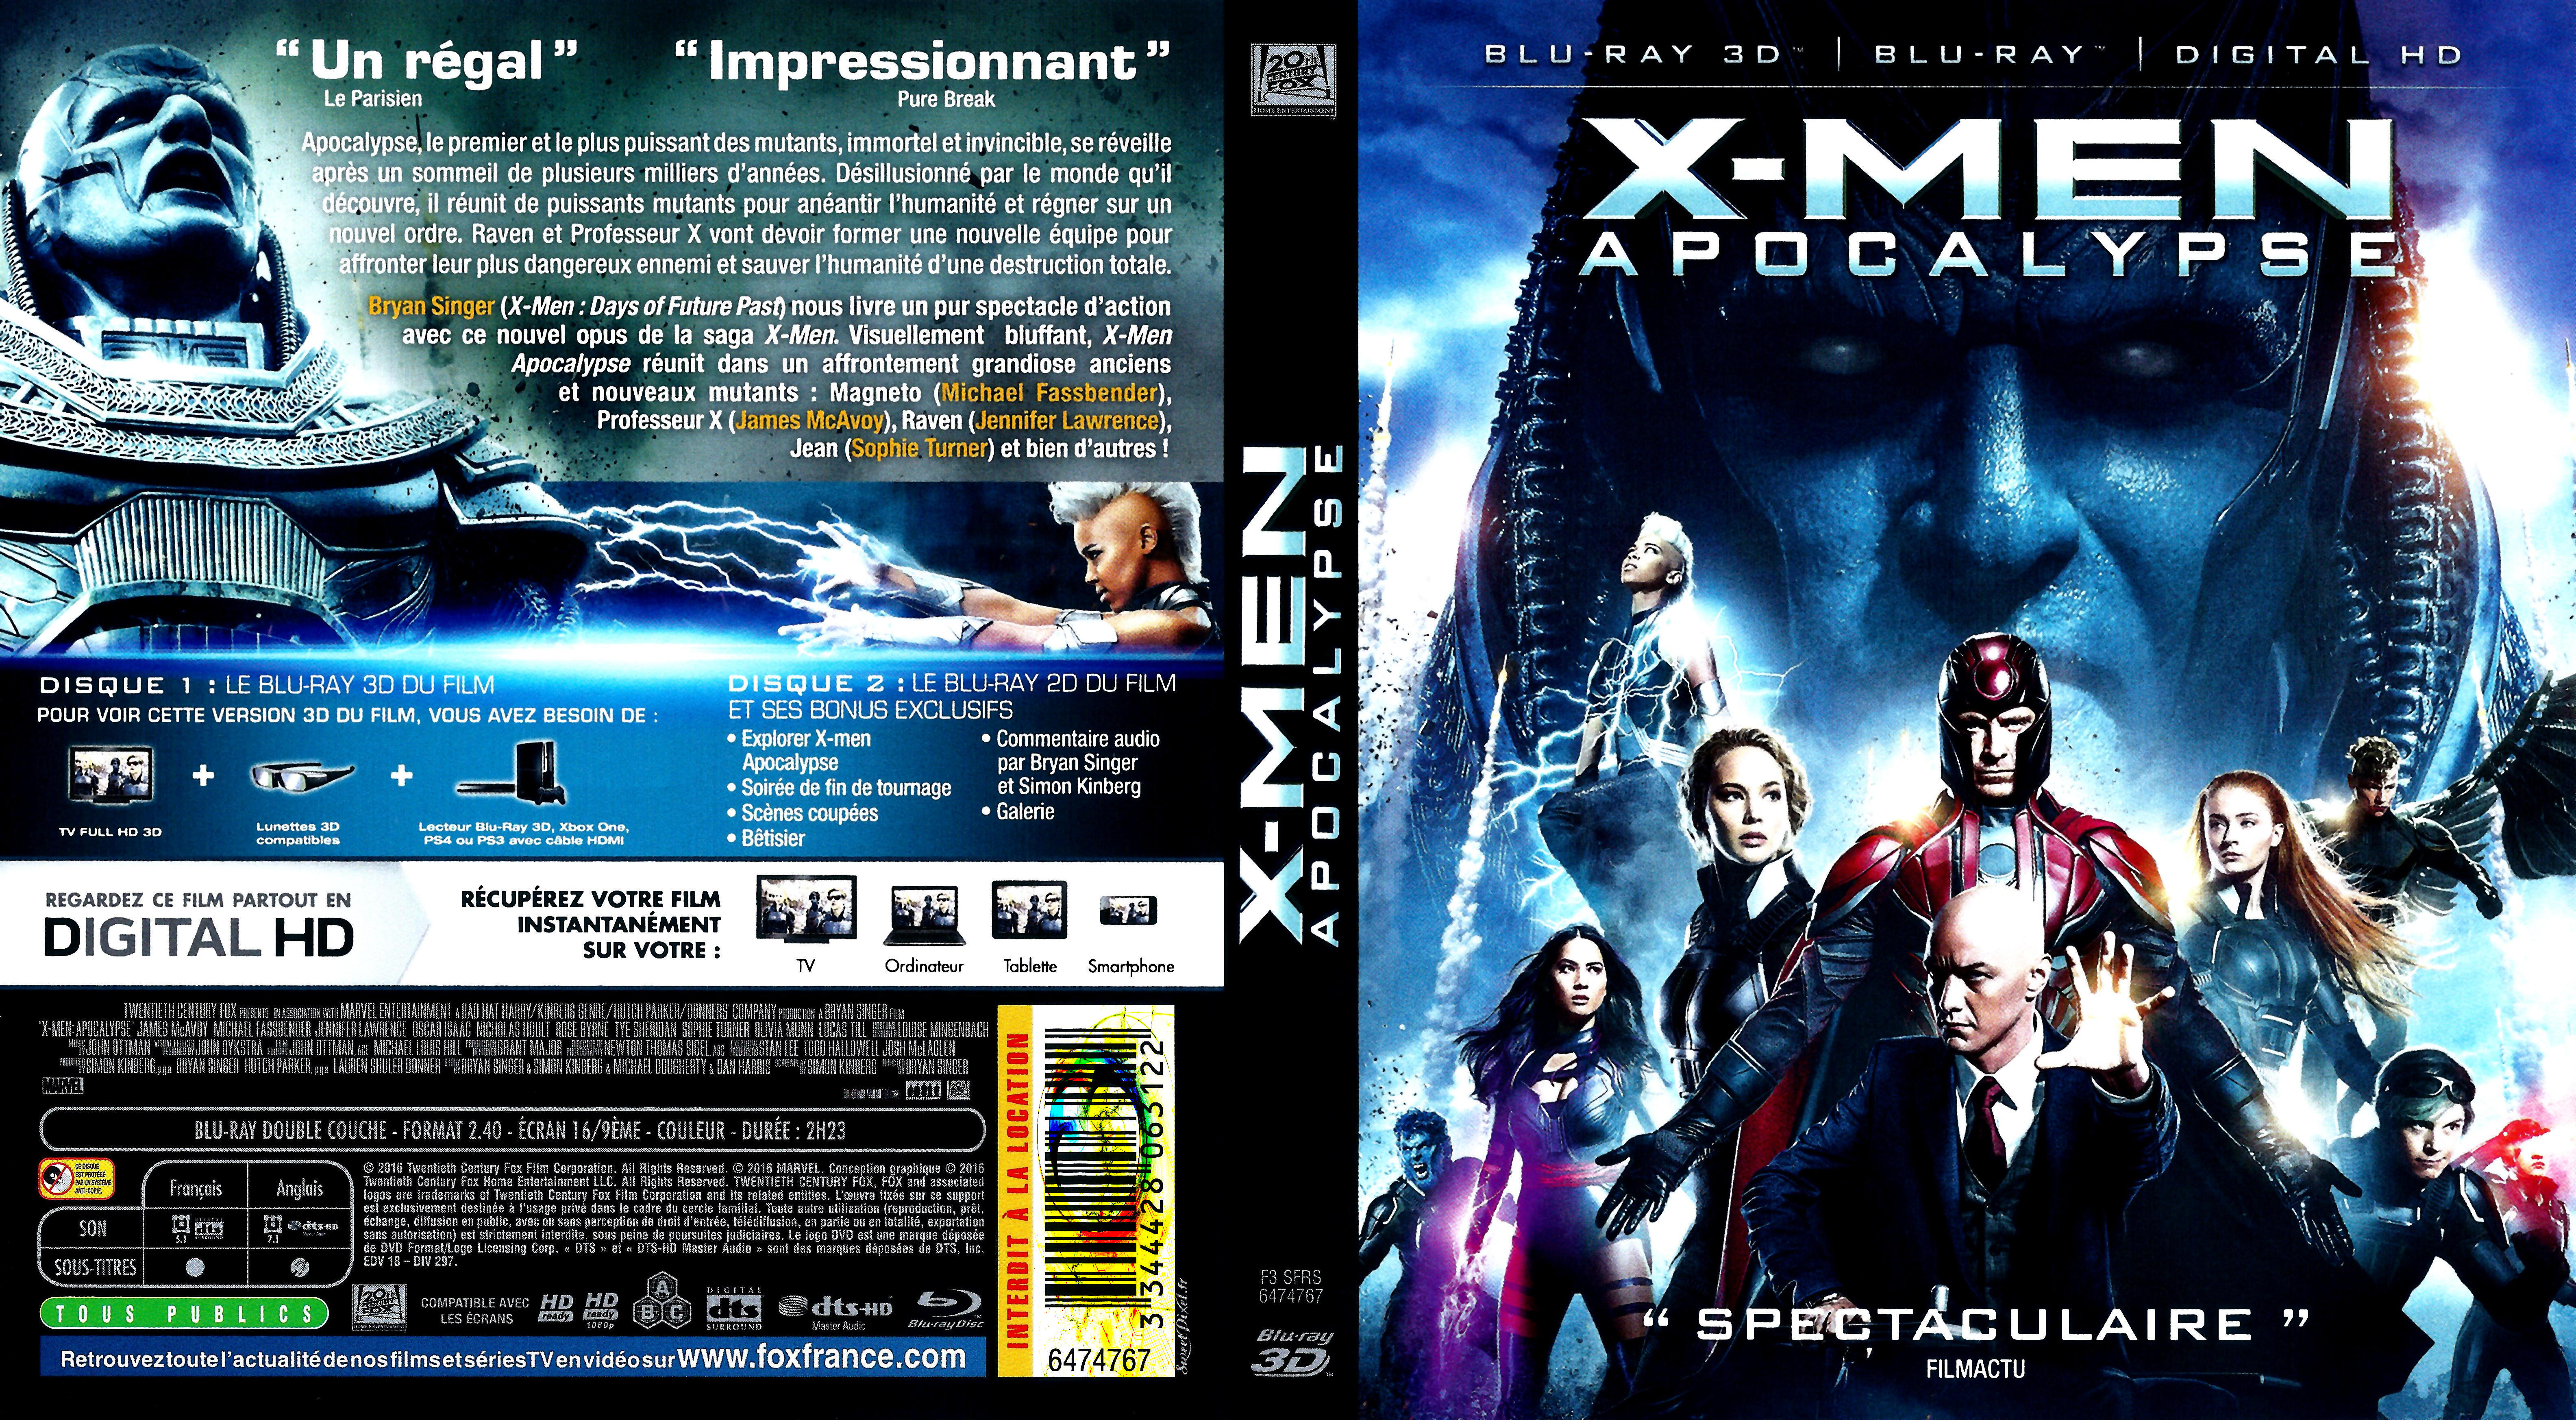 Jaquette DVD X-men apocalypse 2D-3D (BLU-RAY)